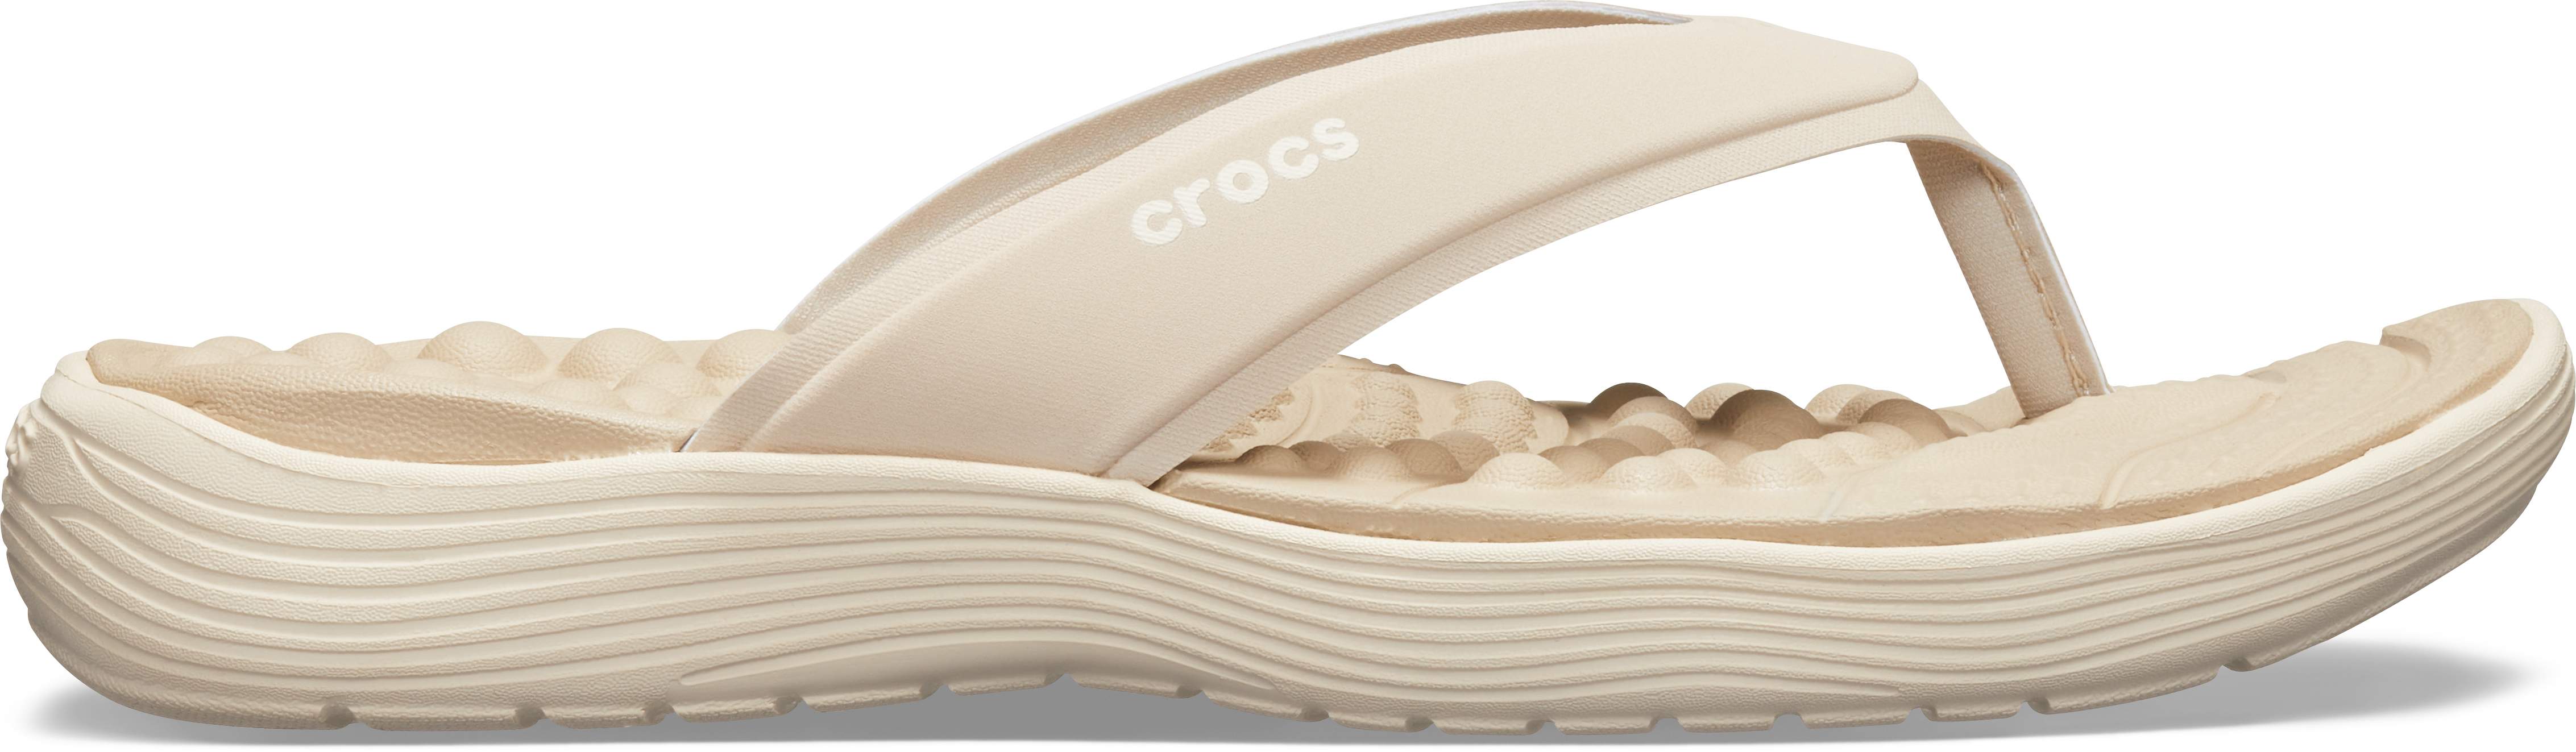 crocs women's reviva flip